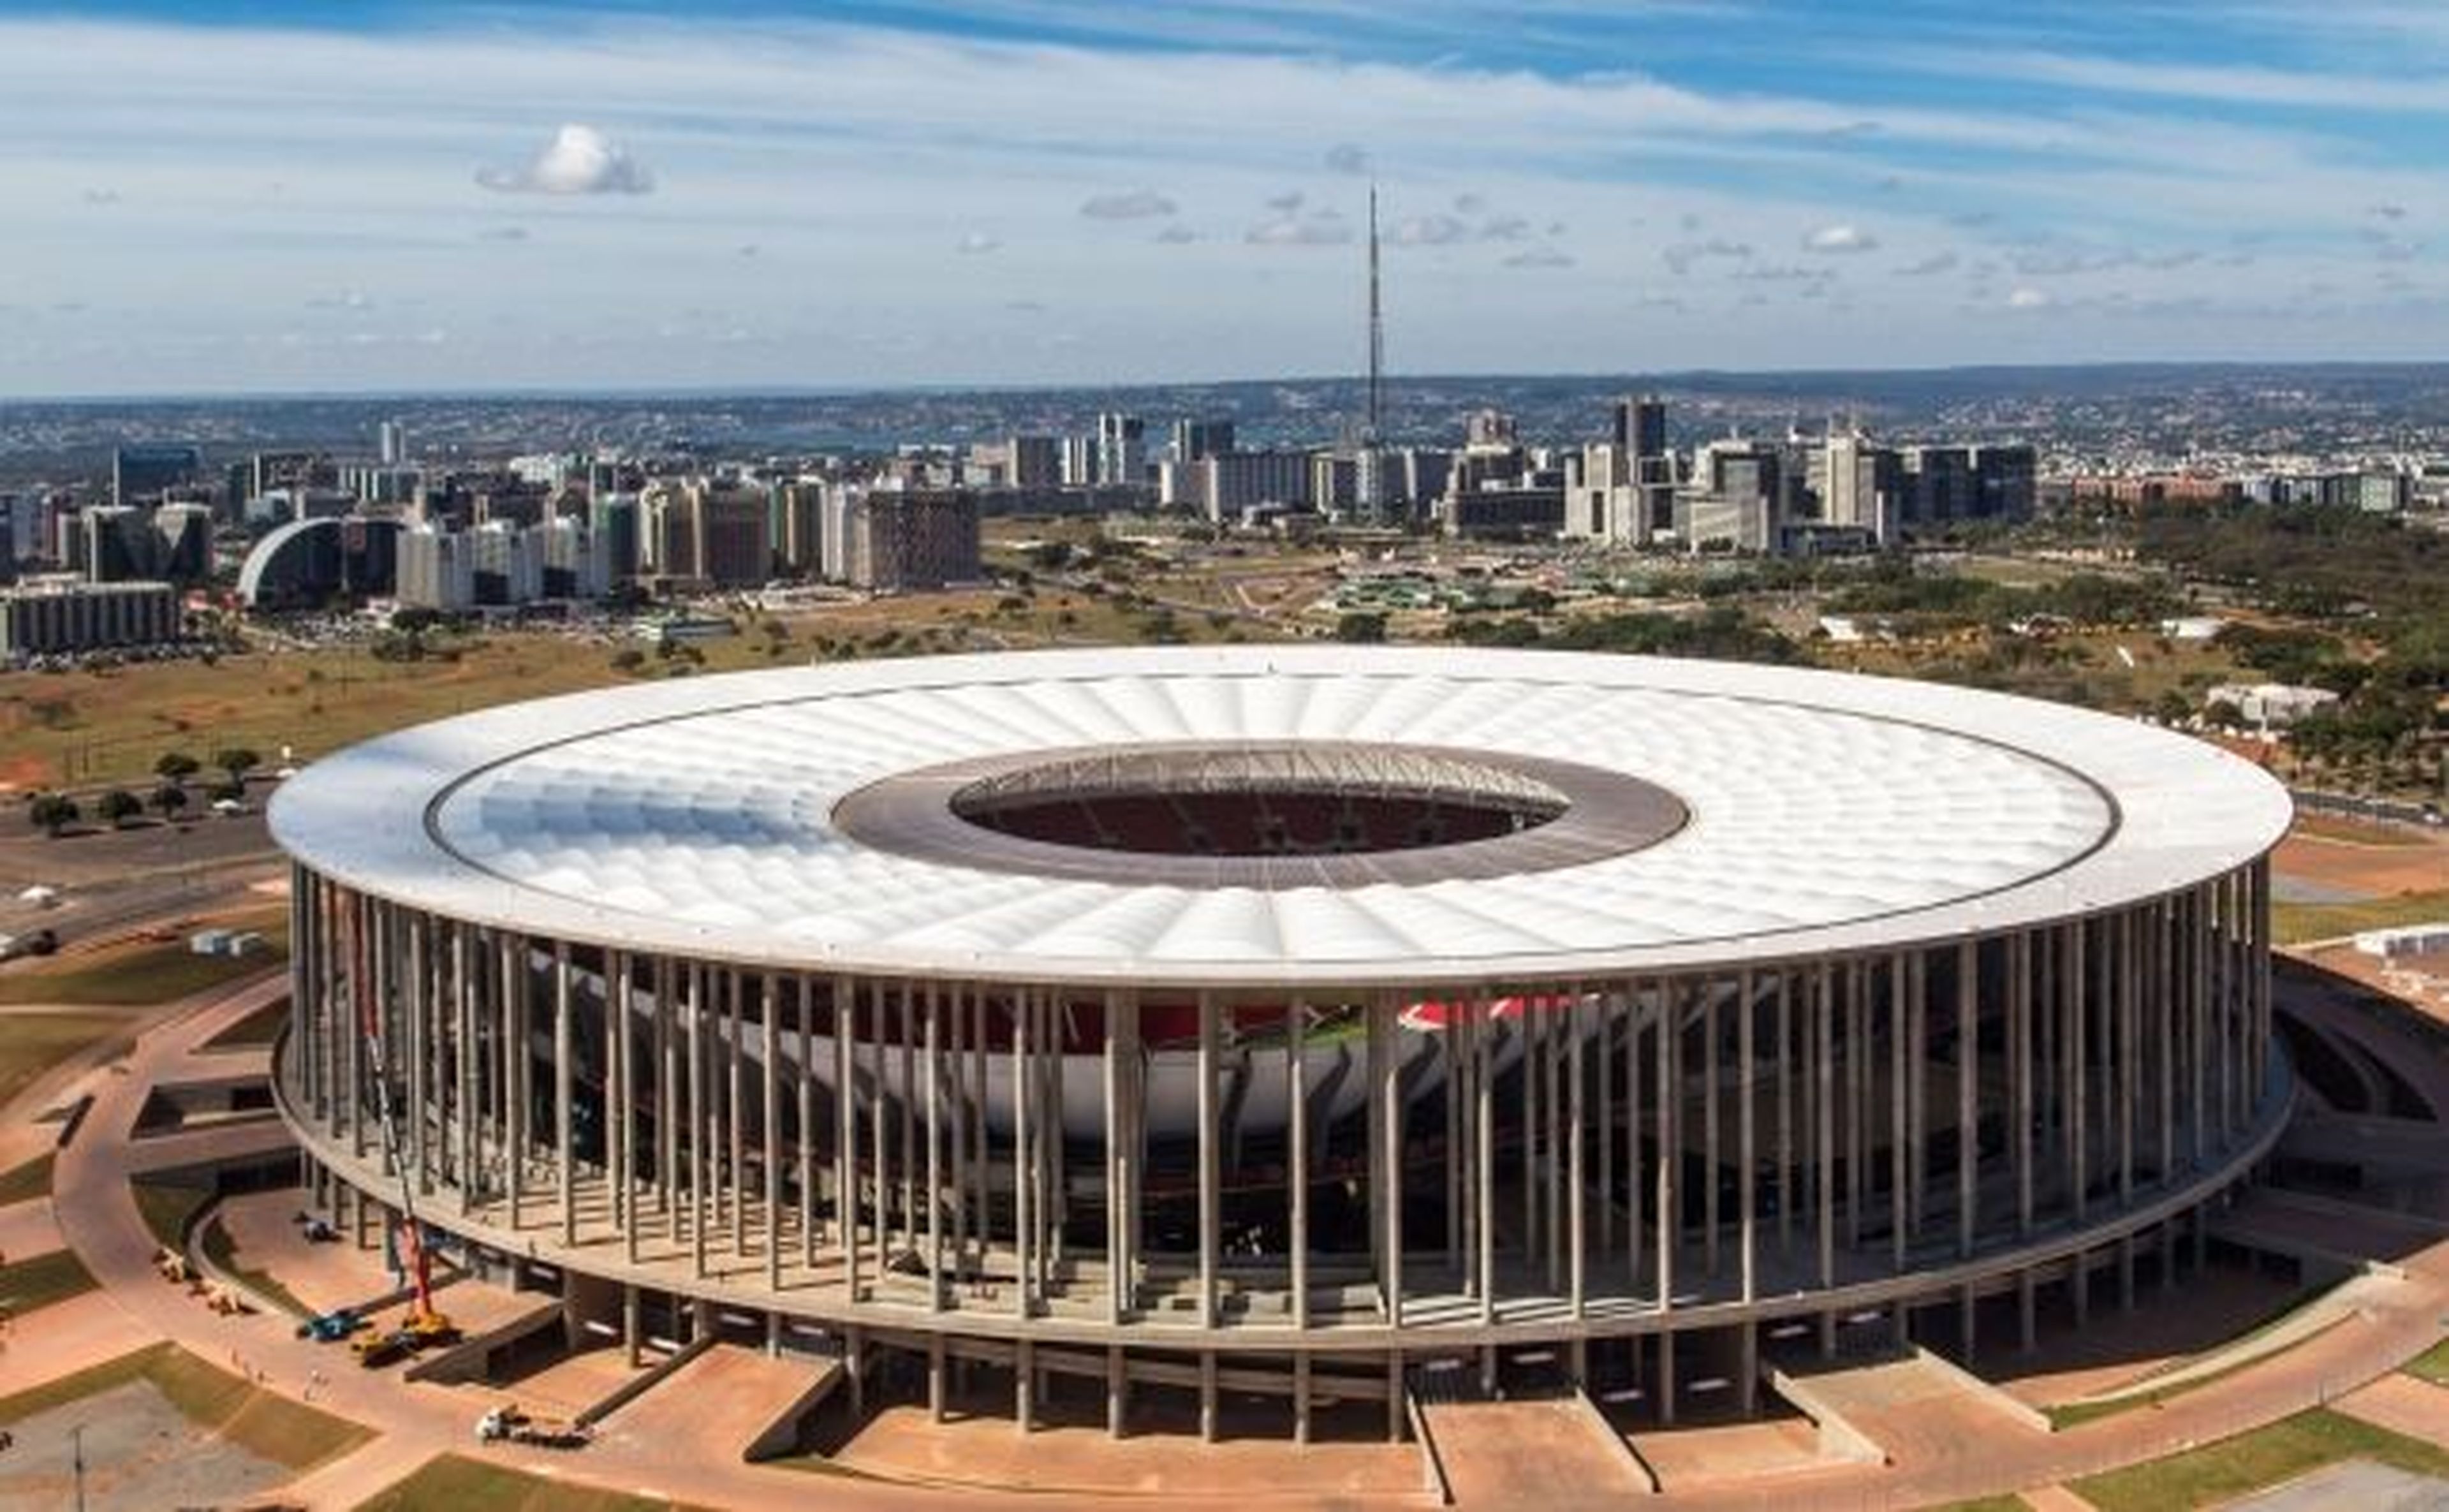 Estadio Nacional Brasilia